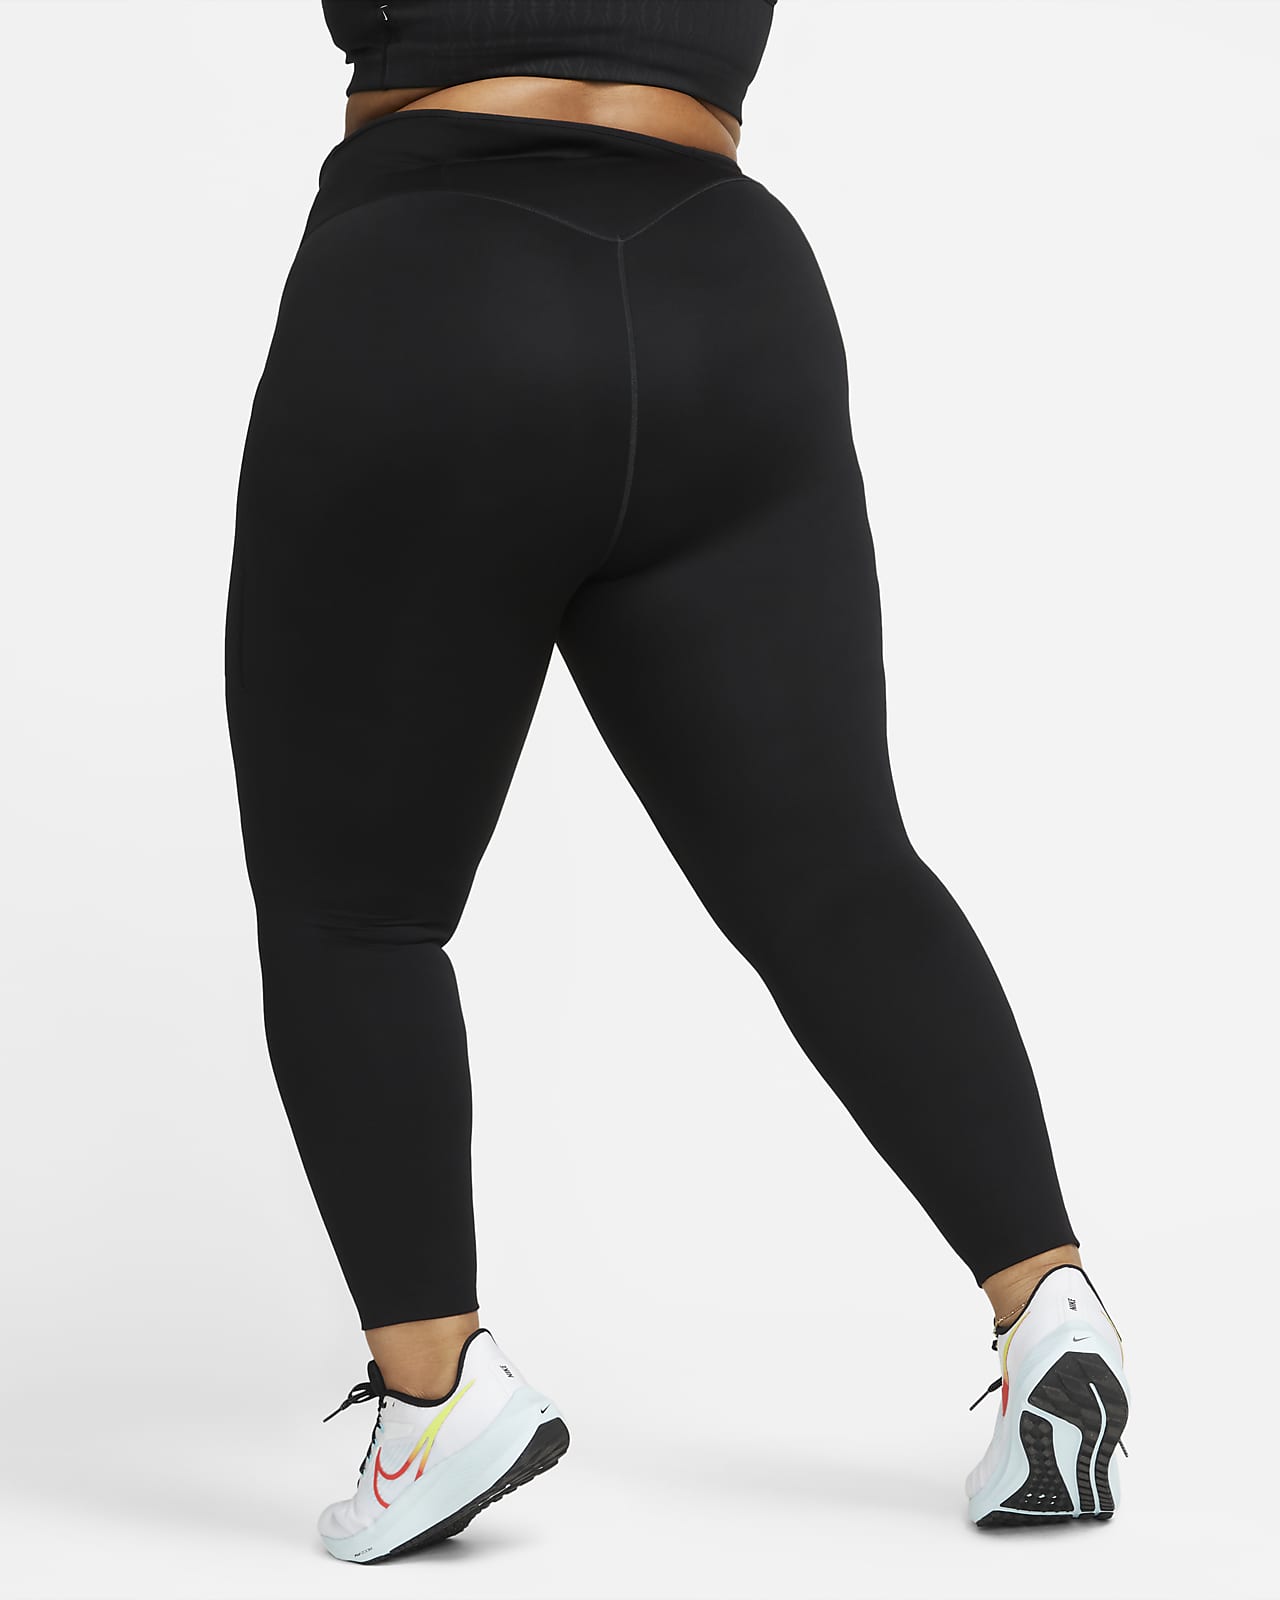 ad  Nike haul + Nike go leggings wear test! @NikeWomen 